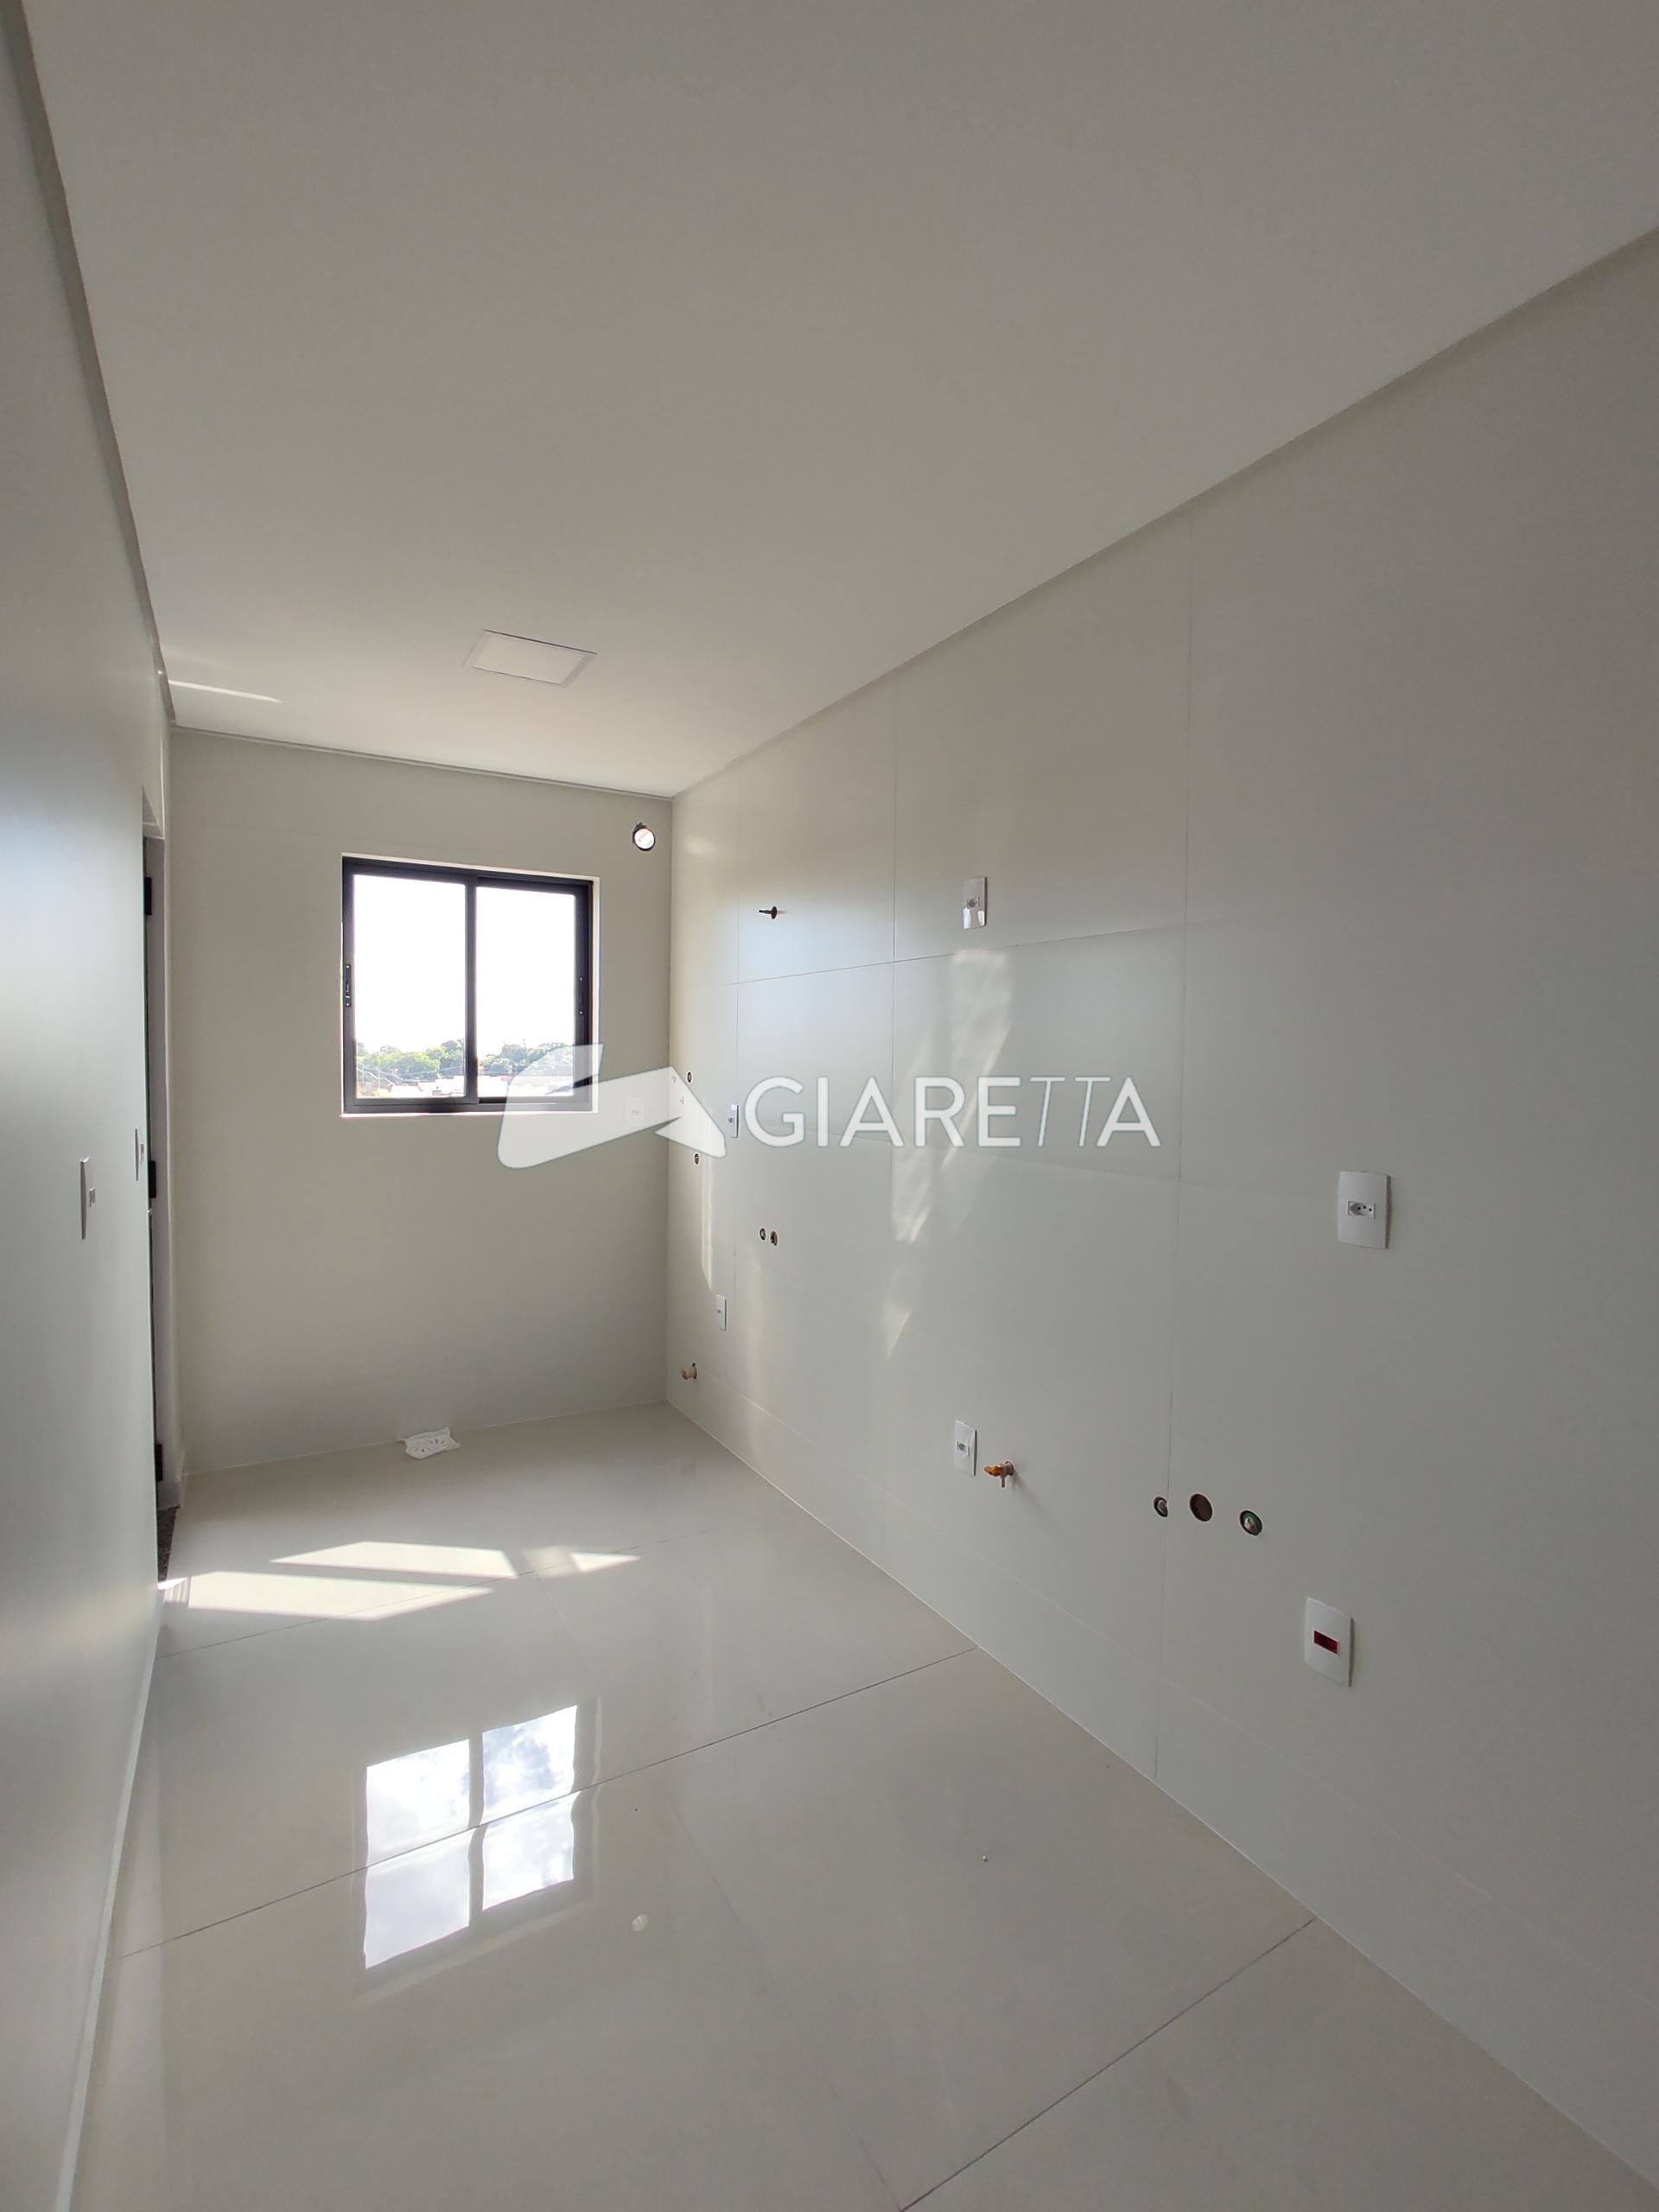 Apartamento, 1 quarto, 67 m² - Foto 3